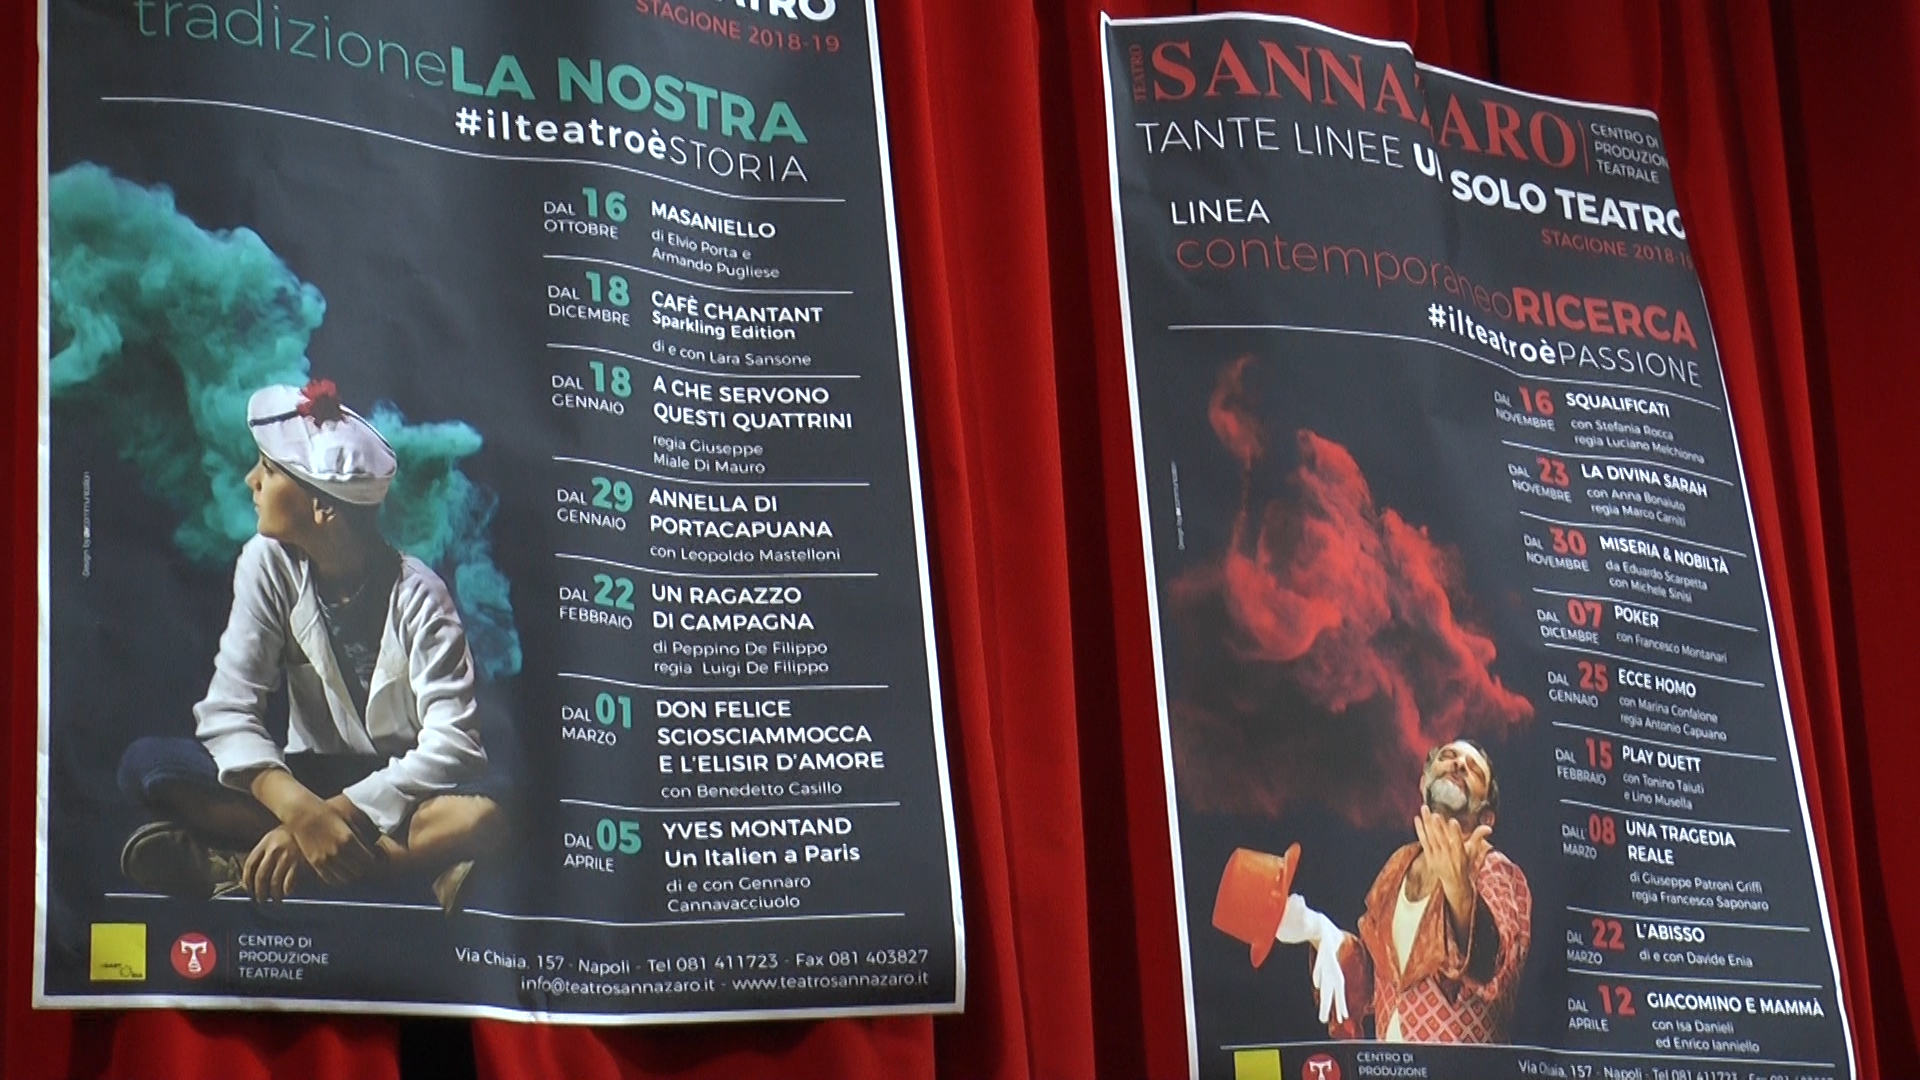 La nuova stagione del Teatro Sannazzaro